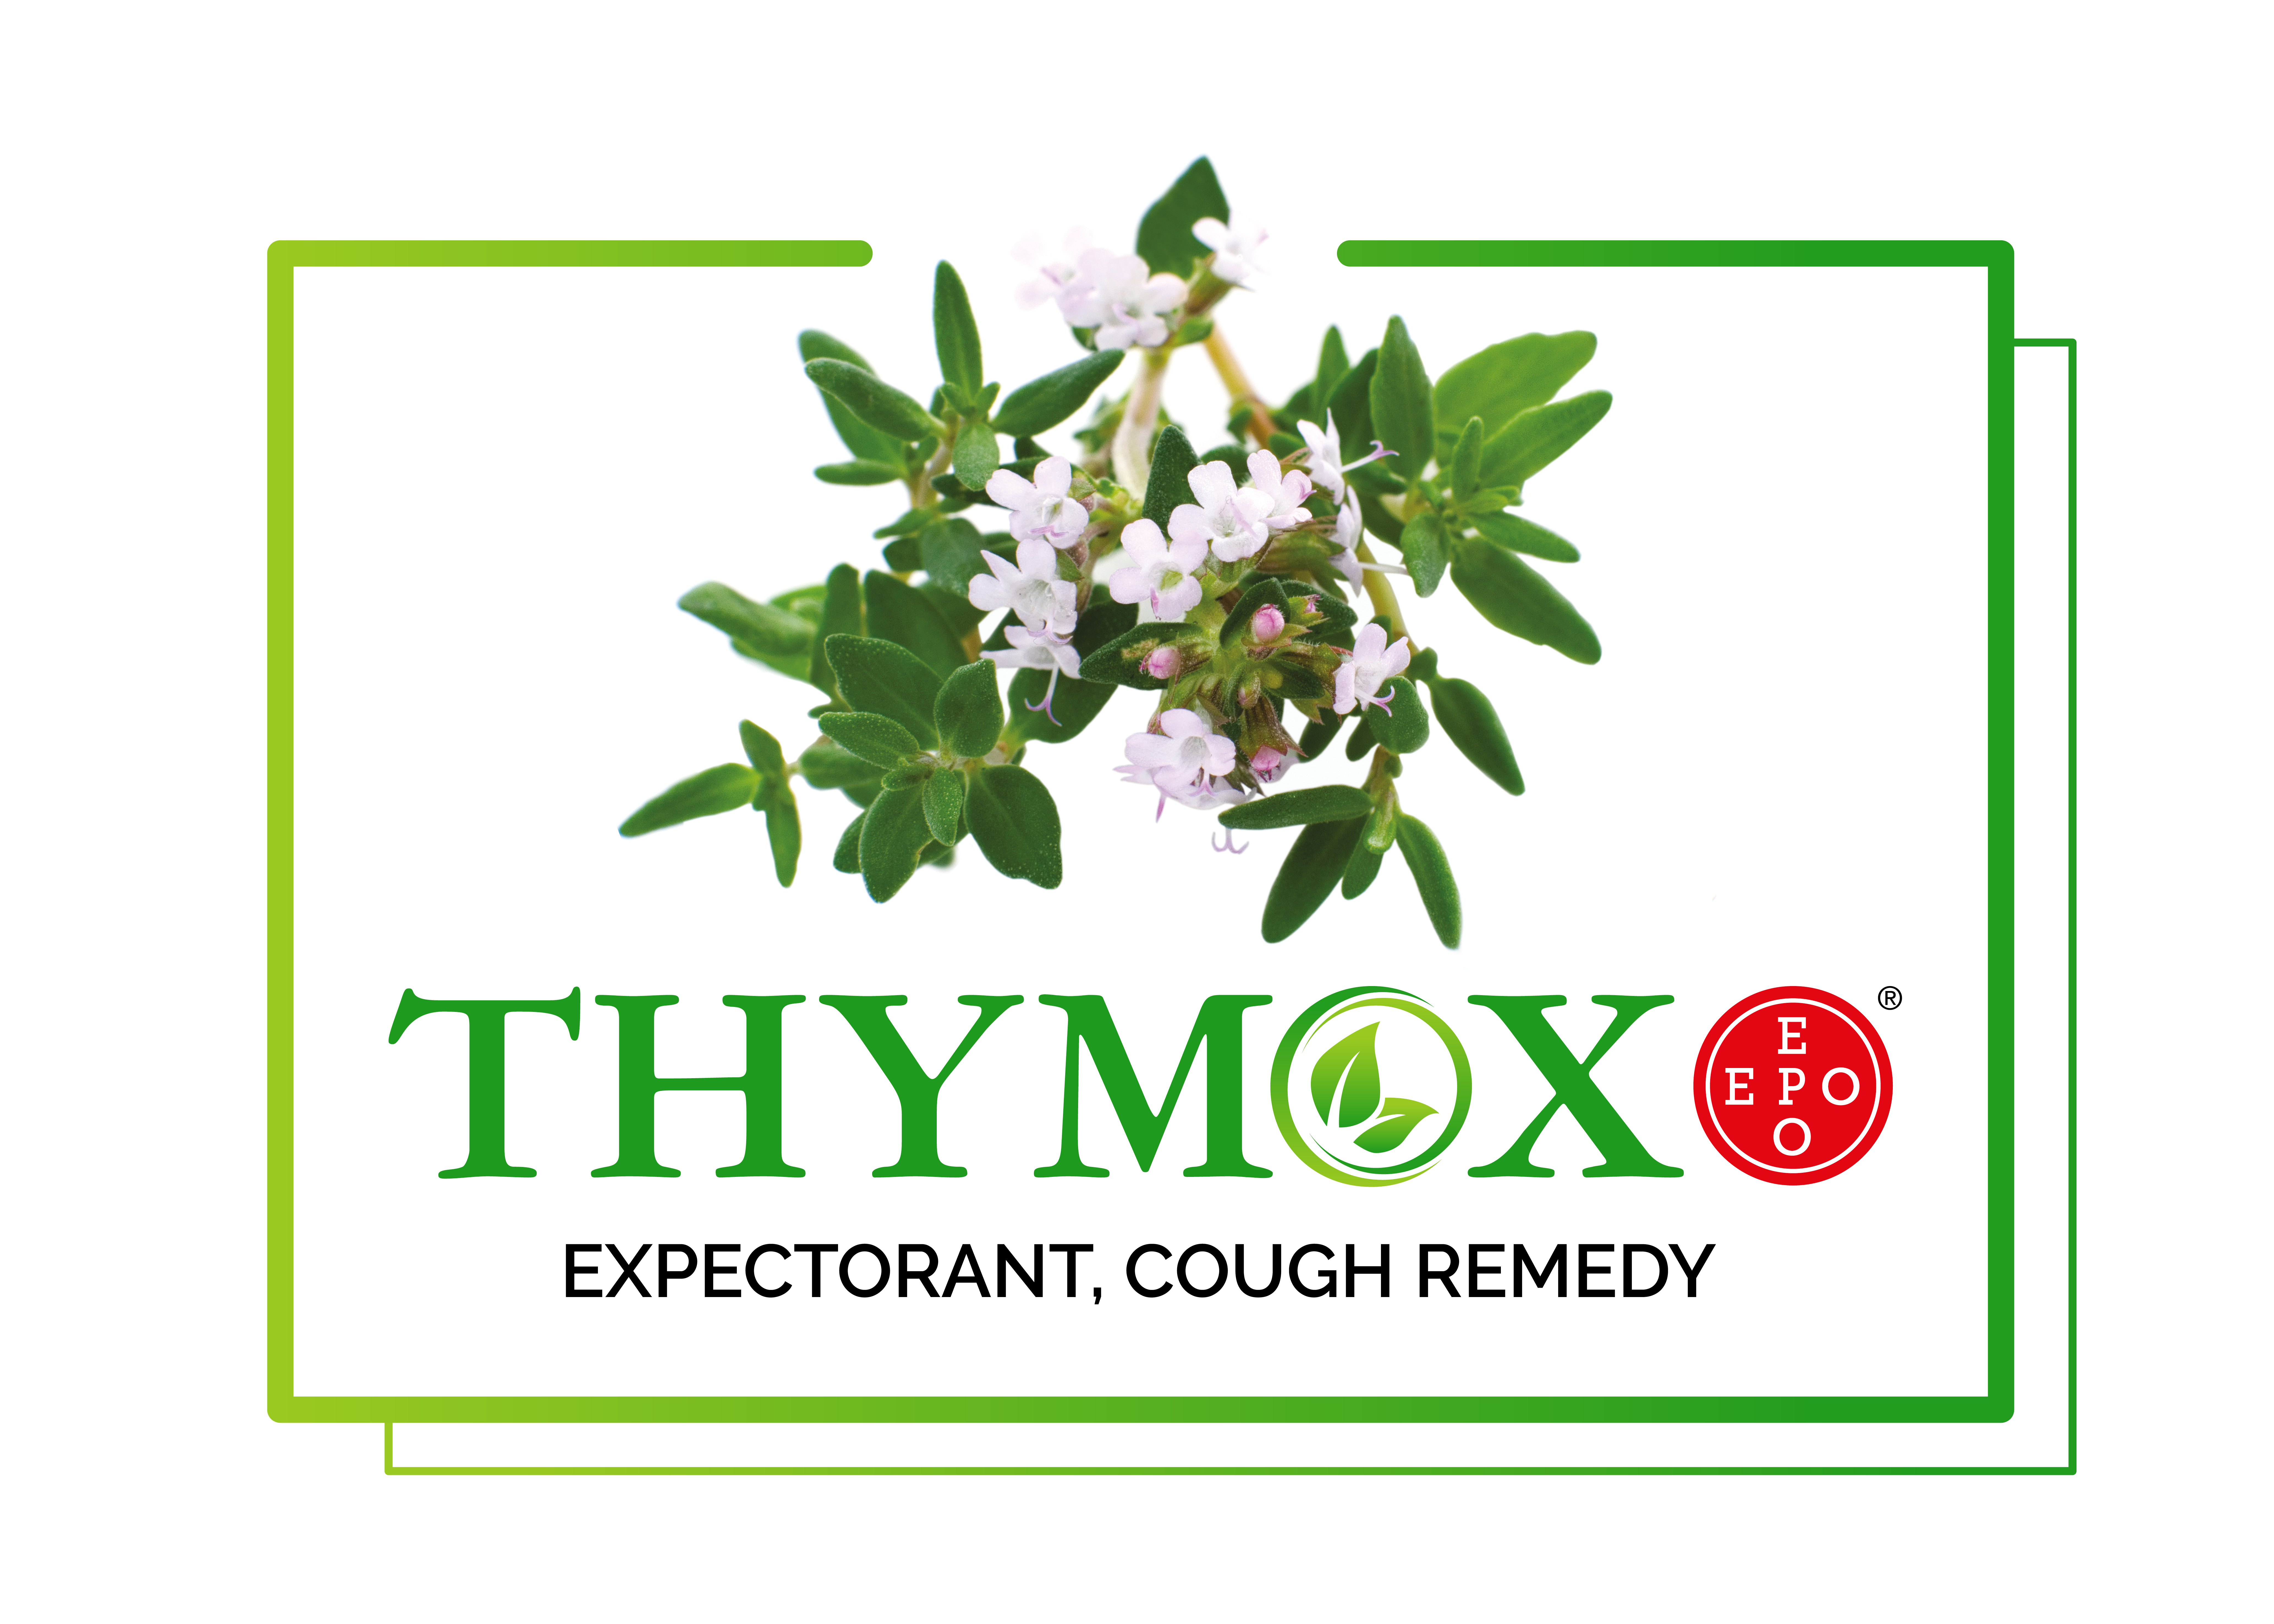 Thymox®